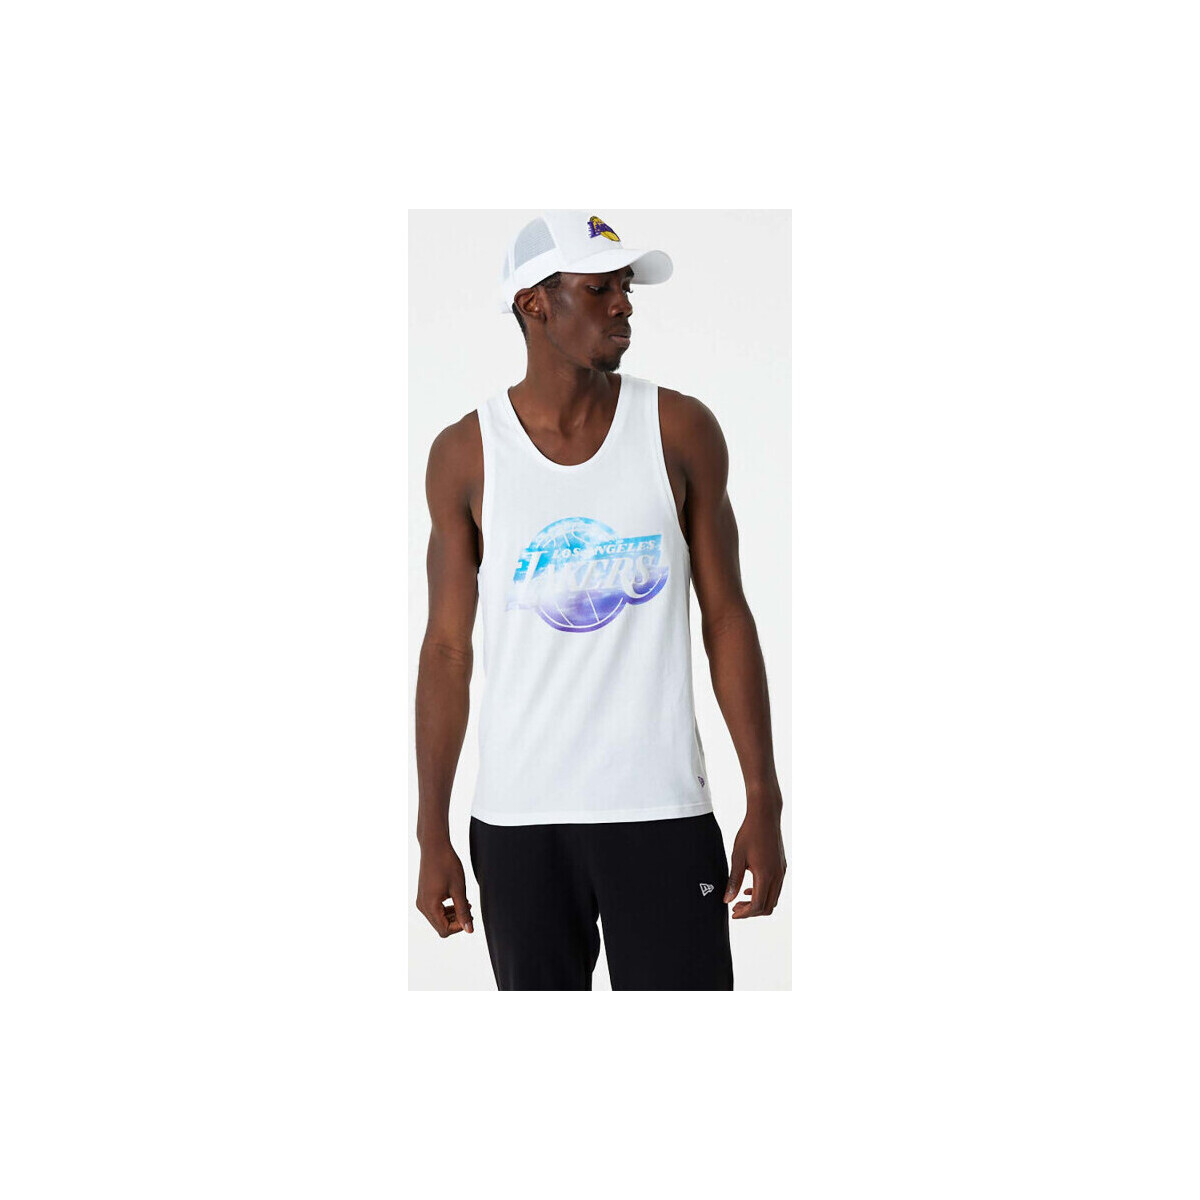 Vêtements Débardeurs / T-shirts sans manche New-Era Débardeur NBA Los Angeles Lake Multicolore